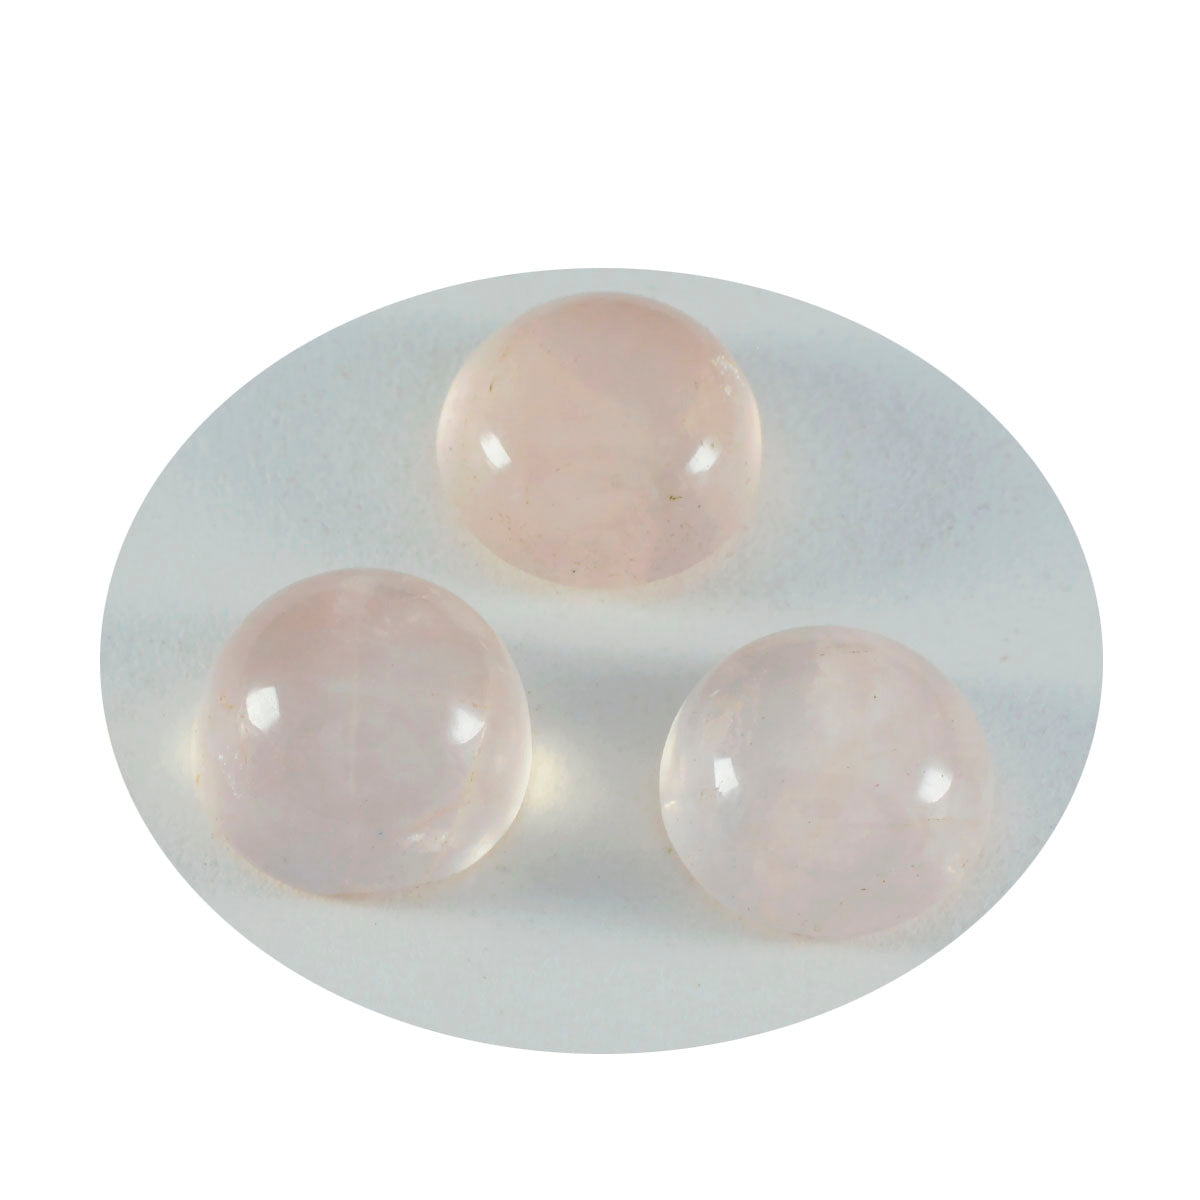 Riyogems 1PC roze rozenkwarts cabochon 13x13 mm ronde vorm, mooie kwaliteit losse edelsteen